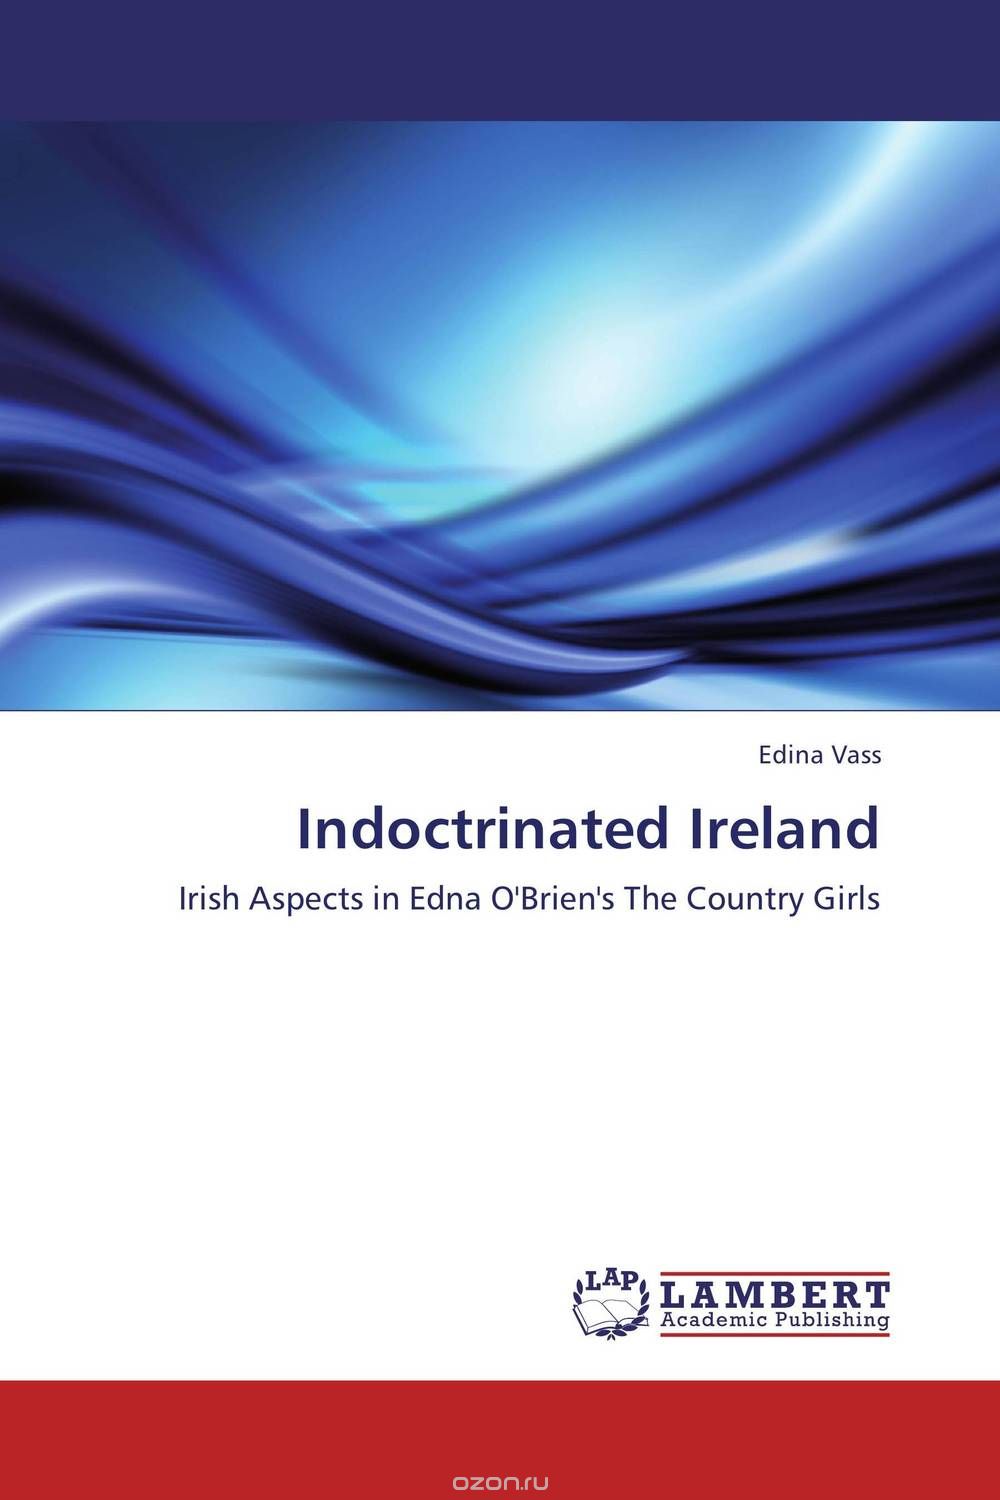 Скачать книгу "Indoctrinated Ireland"